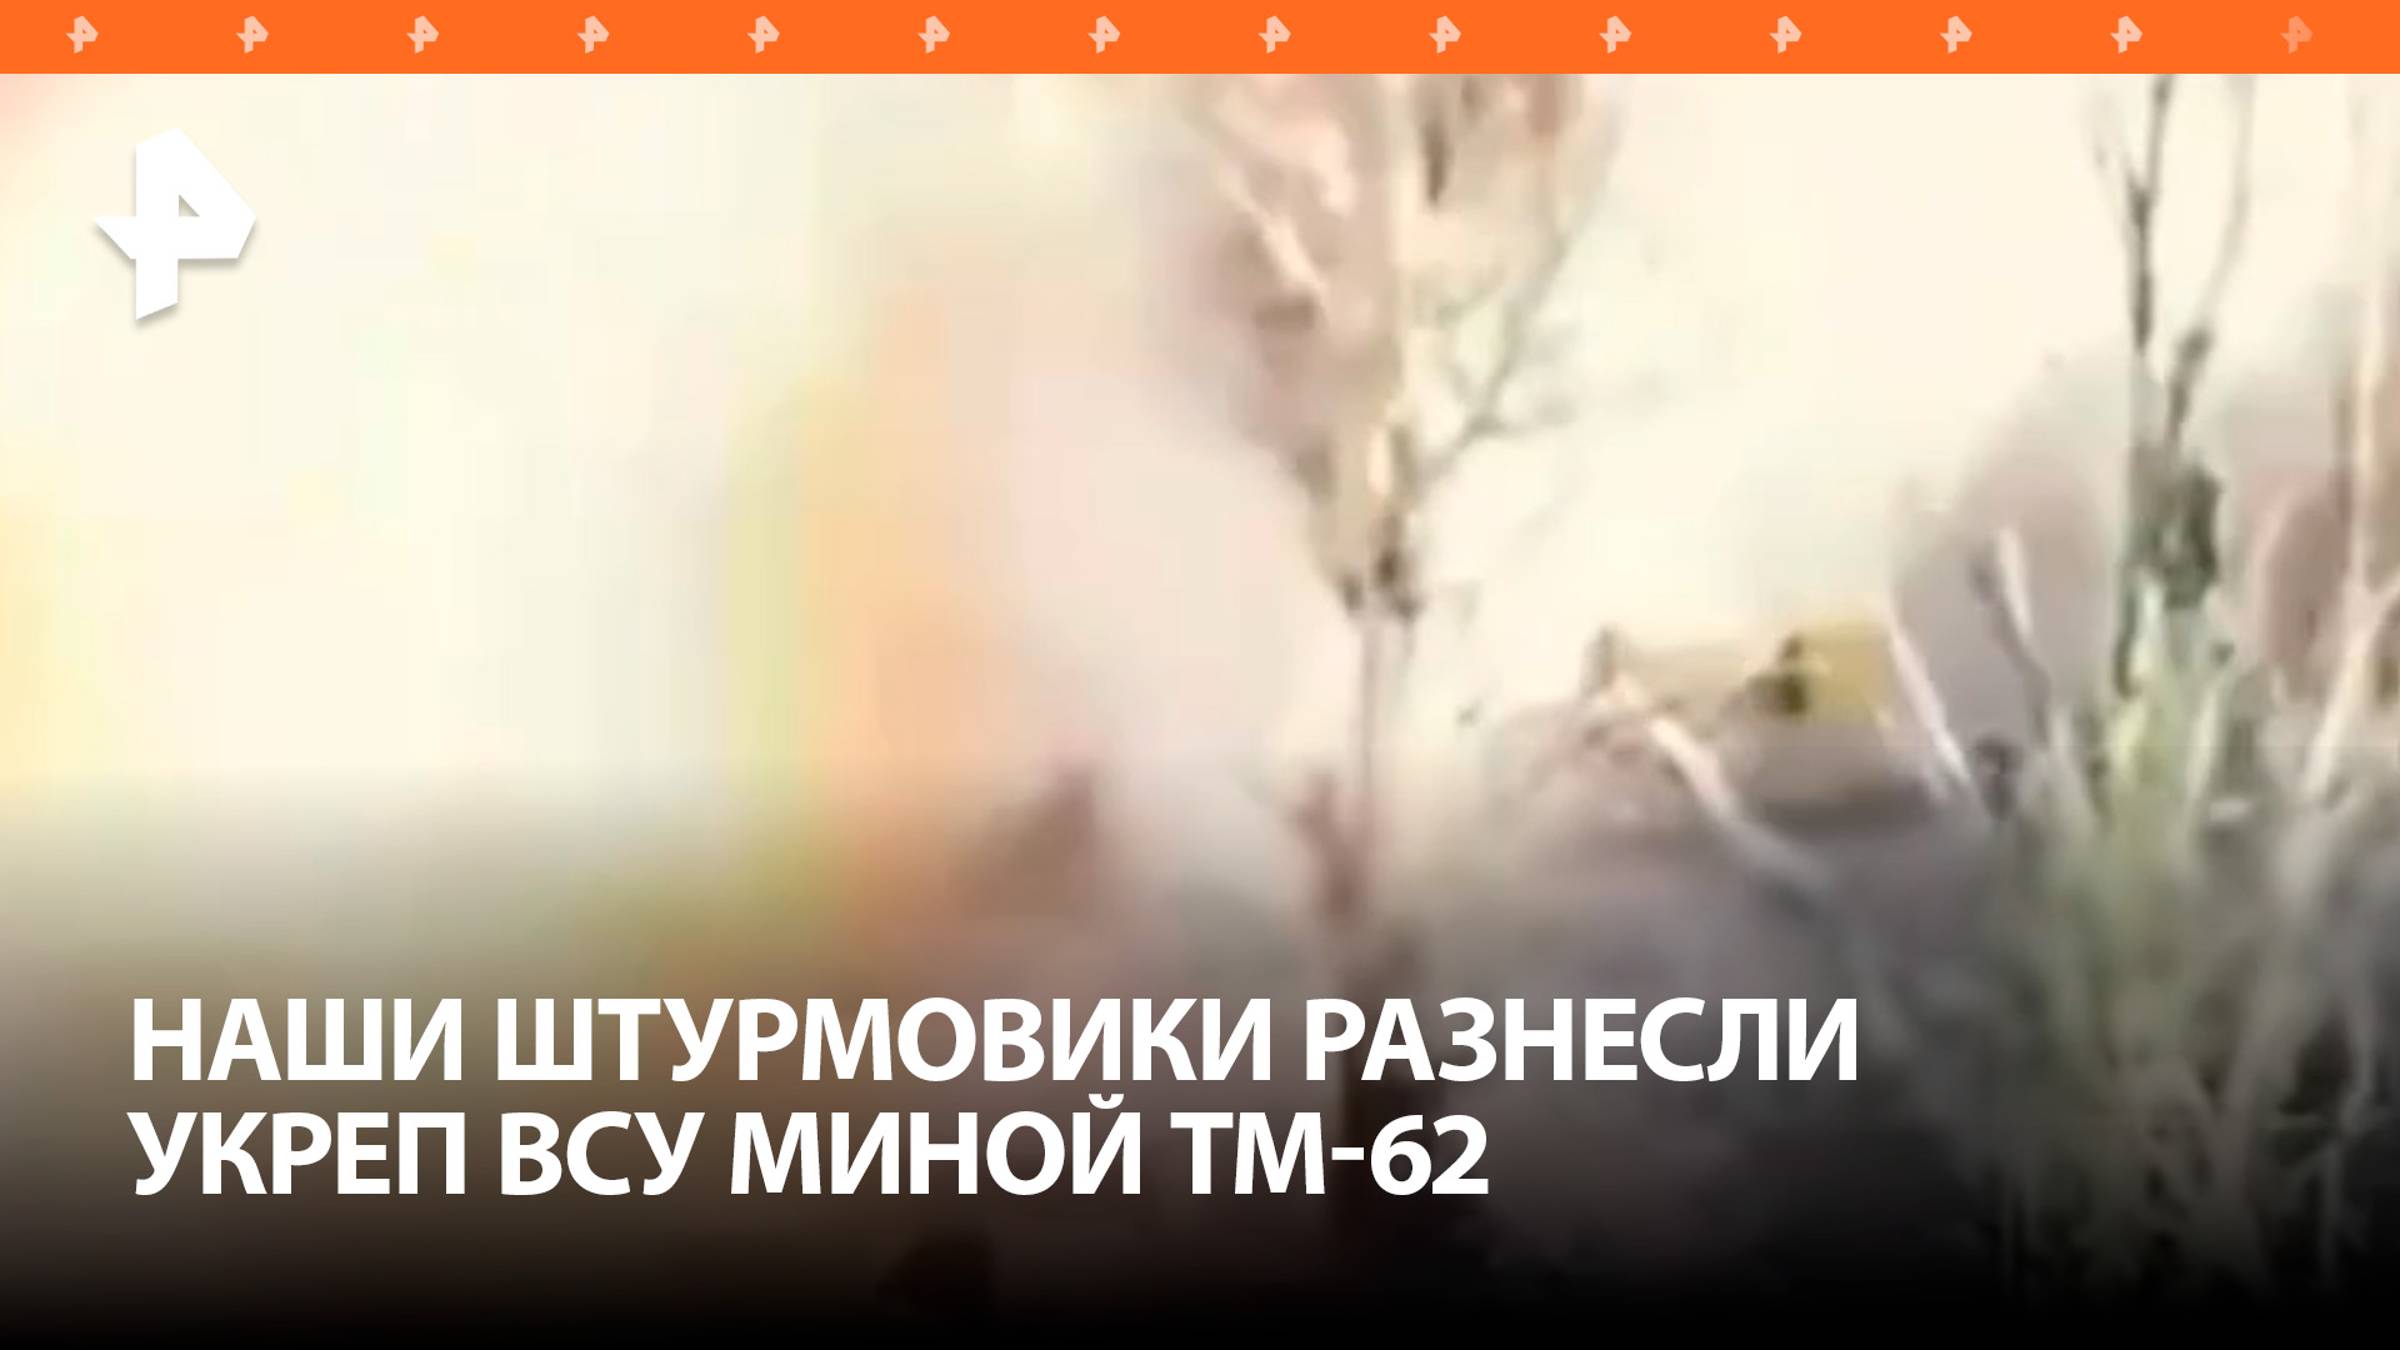 Российские штурмовики забросили мину в здание, где засели боевики ВСУ / РЕН Новости